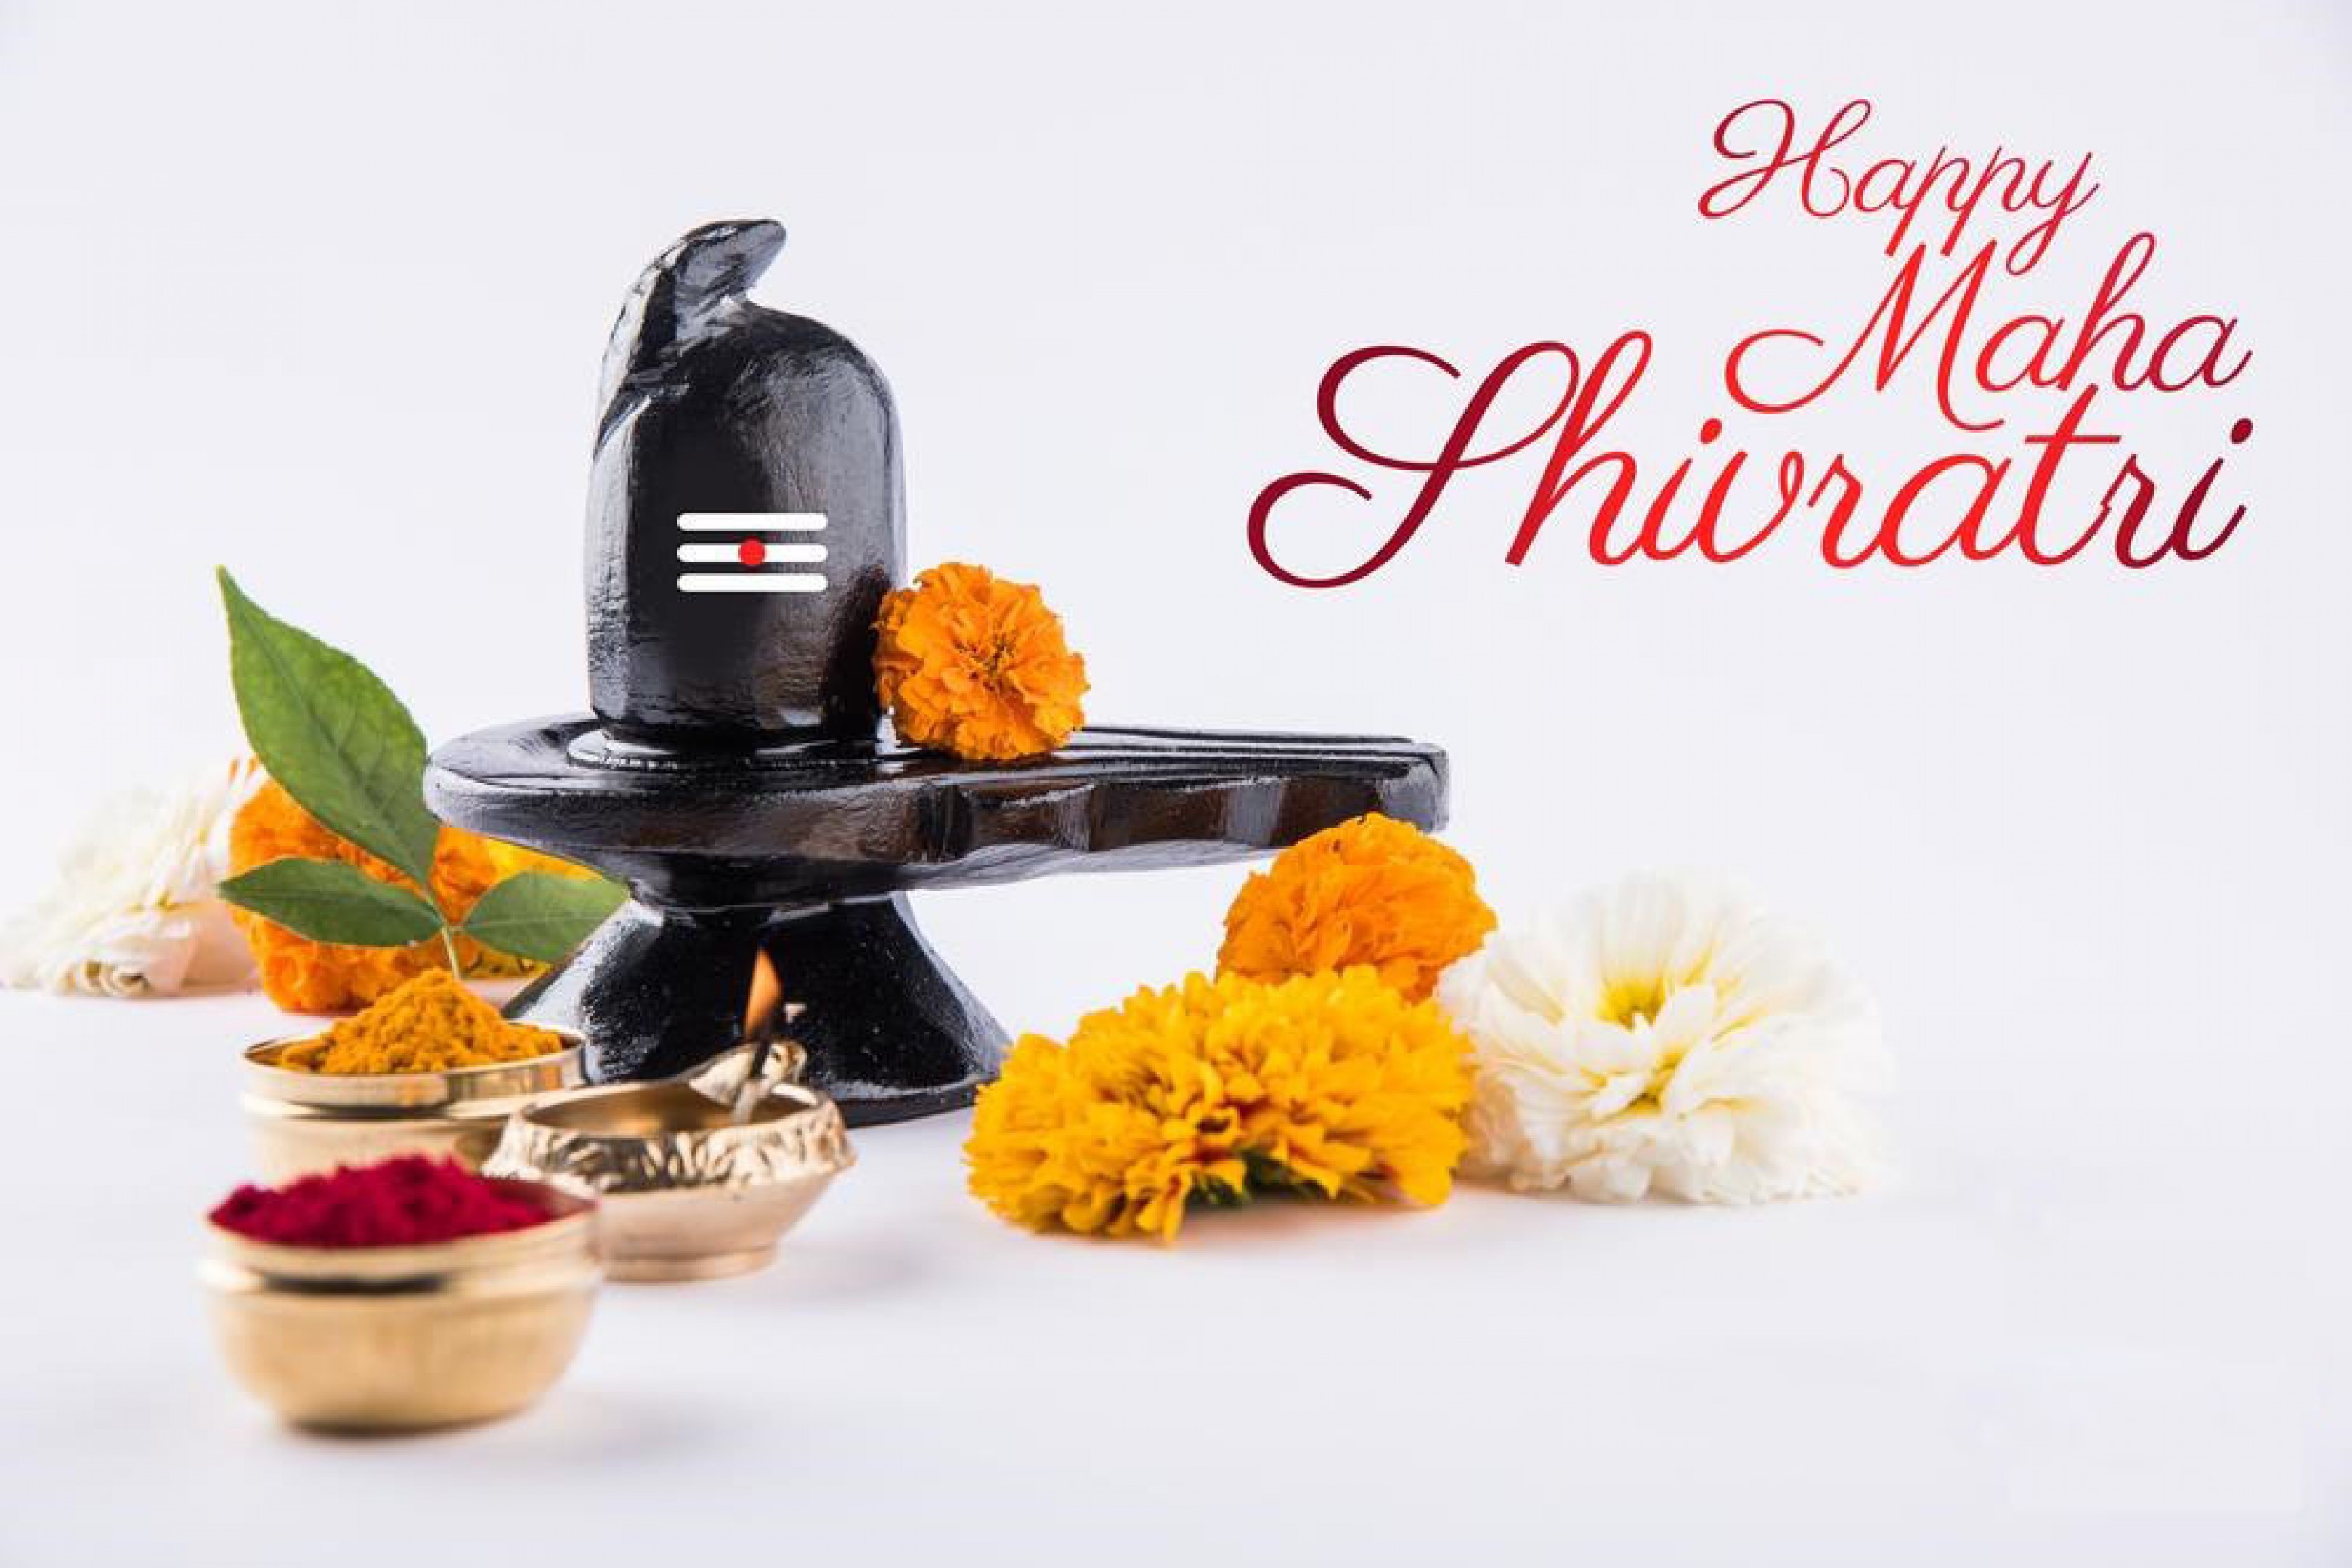 Happy Maha Shivaratri 2017 , HD Wallpaper & Backgrounds